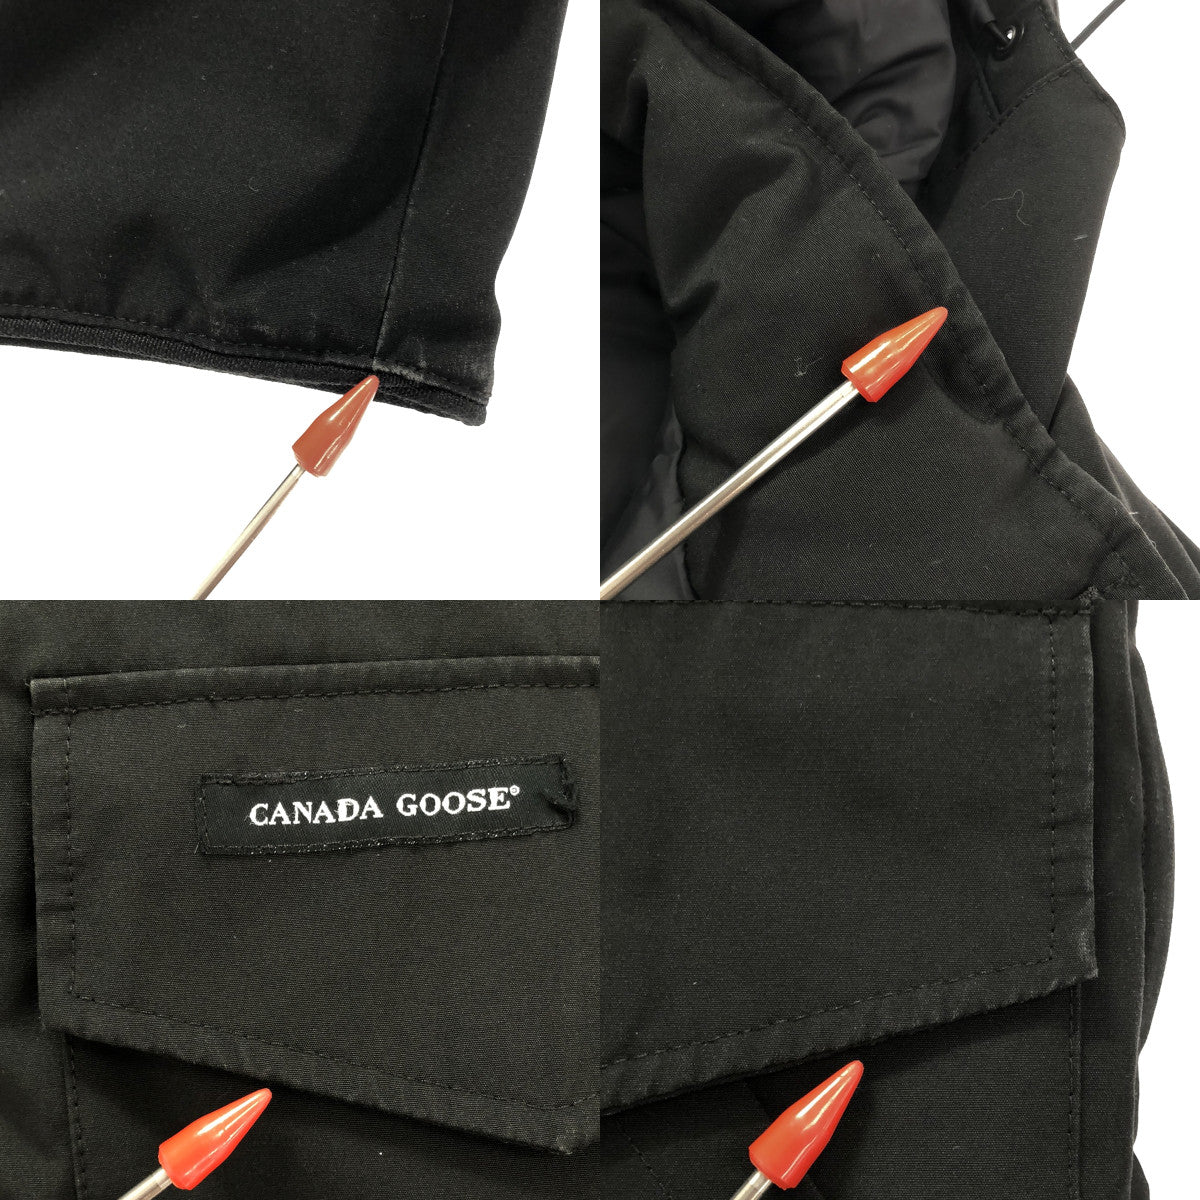 CANADA GOOSE / カナダグース | KAMLOOPS / 4078JM カムループス ダウンジャケット | S | メンズ